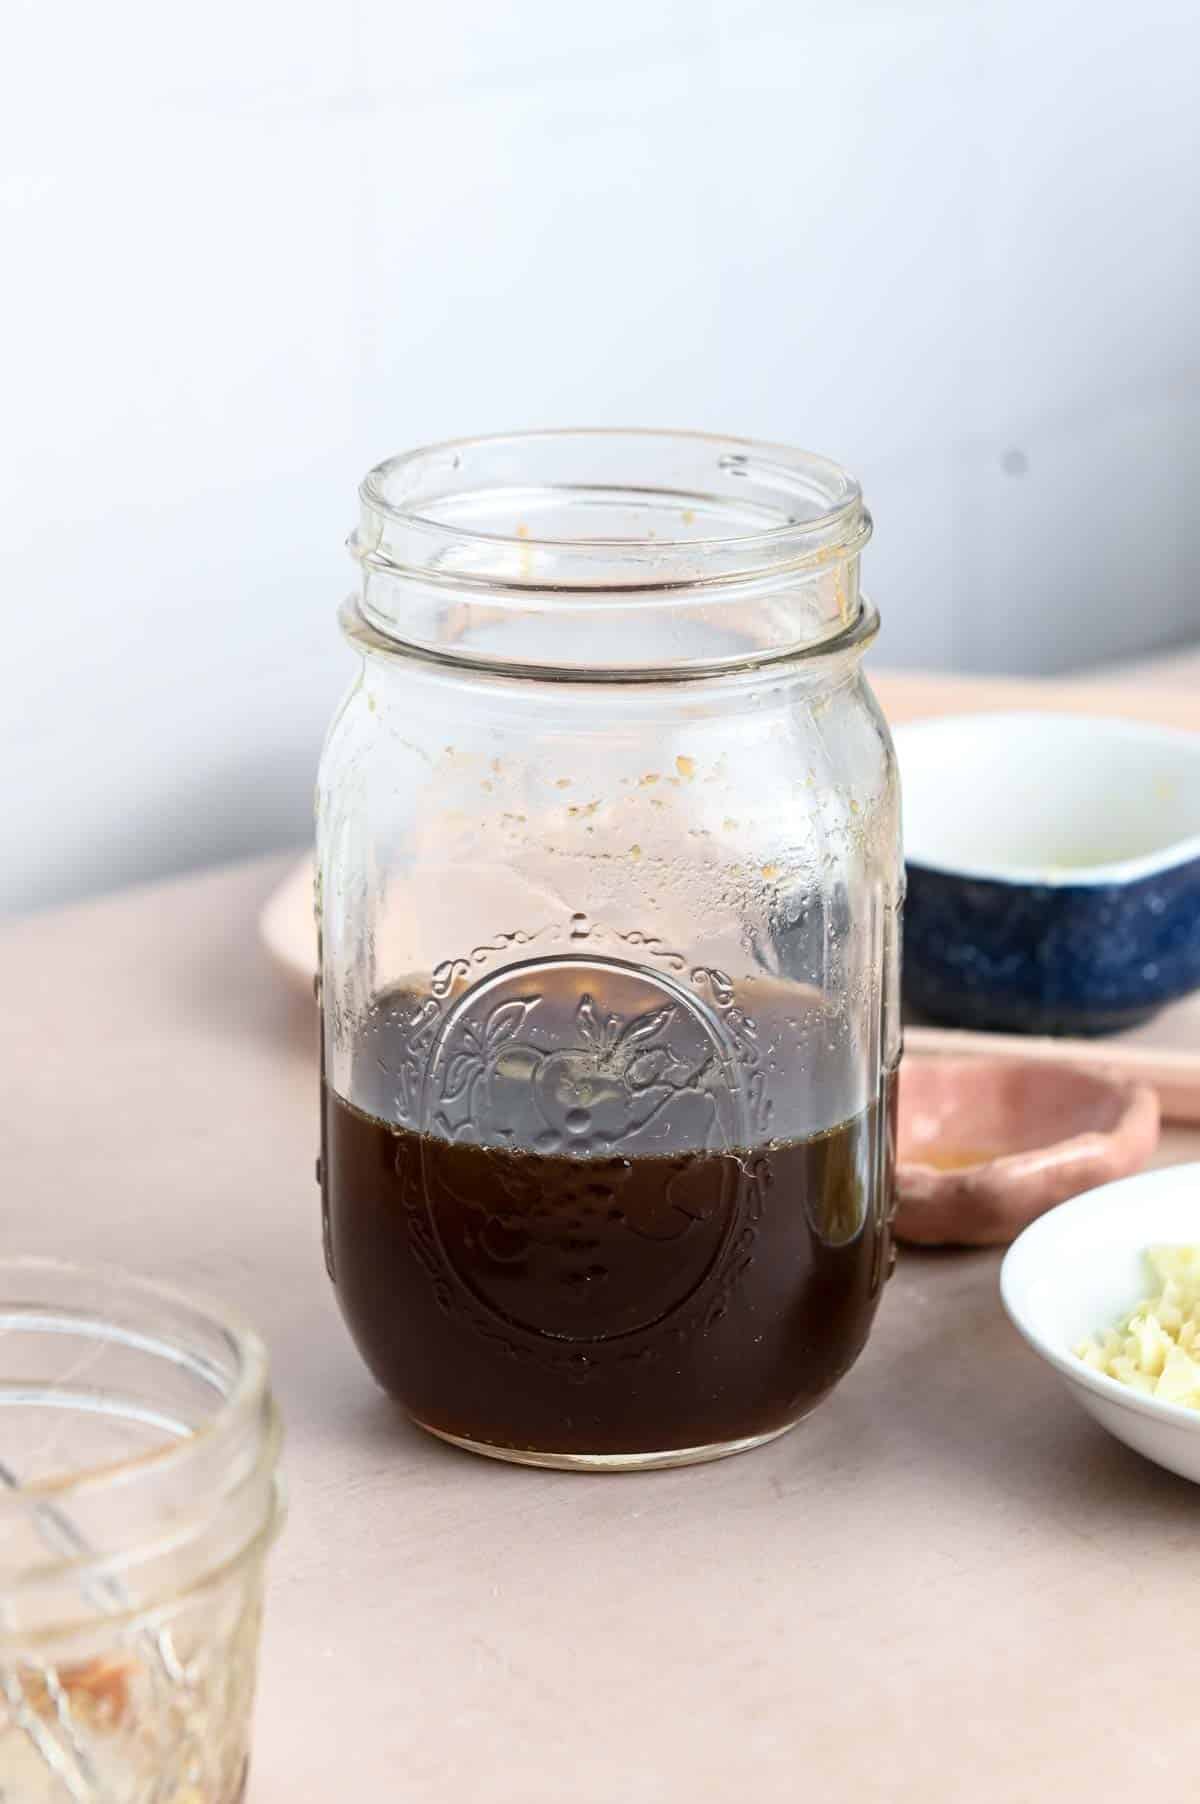 Brown honey garlic sauce in a pint-sized glass mason jar.